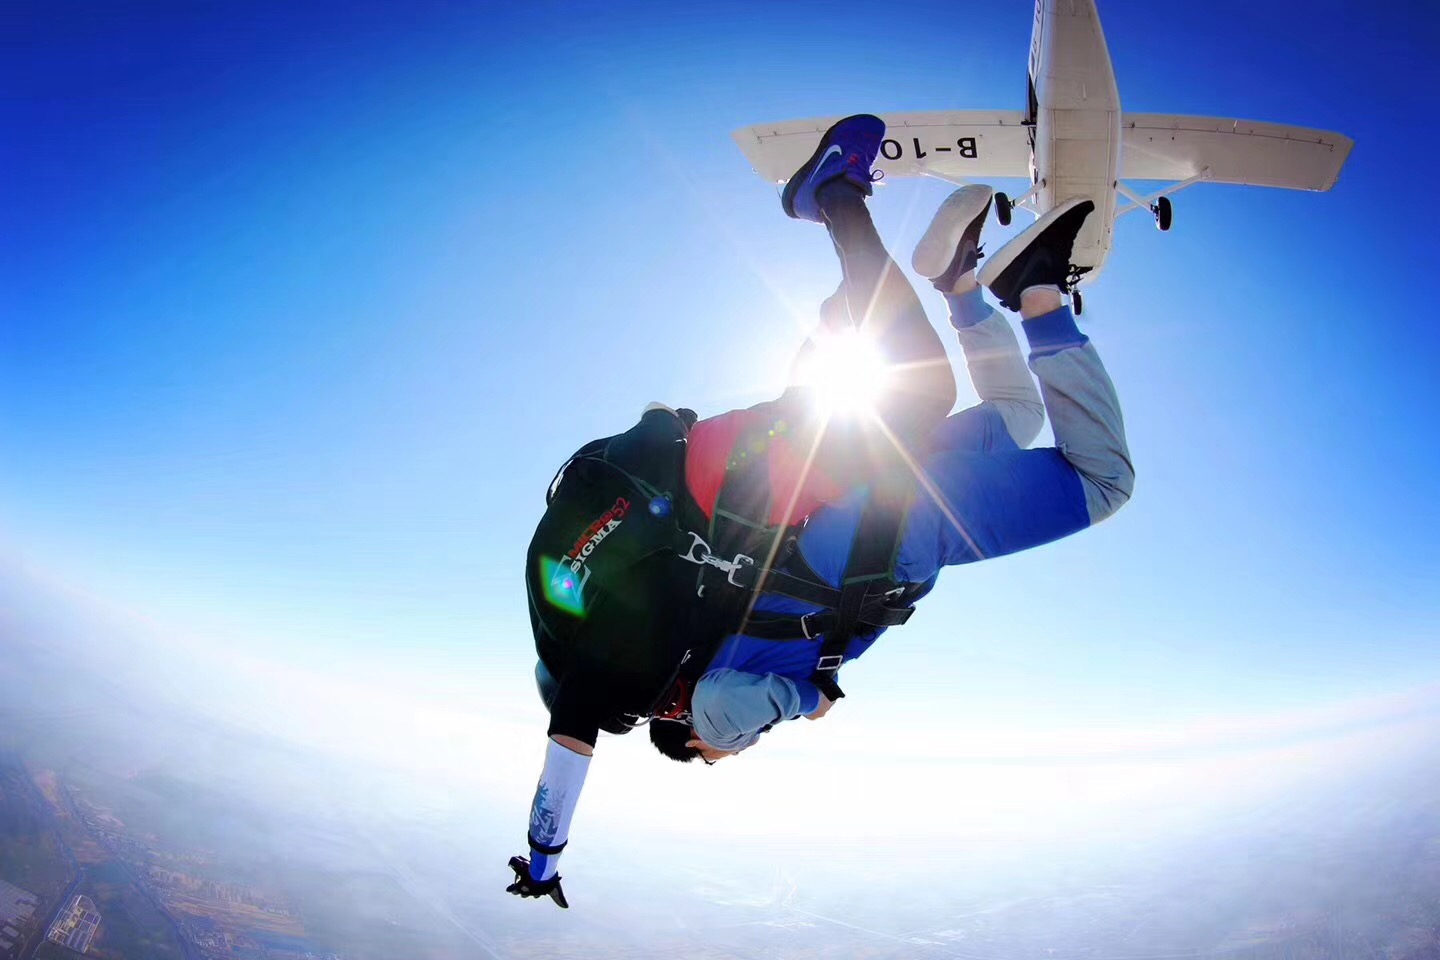 澳洲排名TOP10的高空跳伞地点 跟着攻略一起JUMP(下) - 澳洲生活网